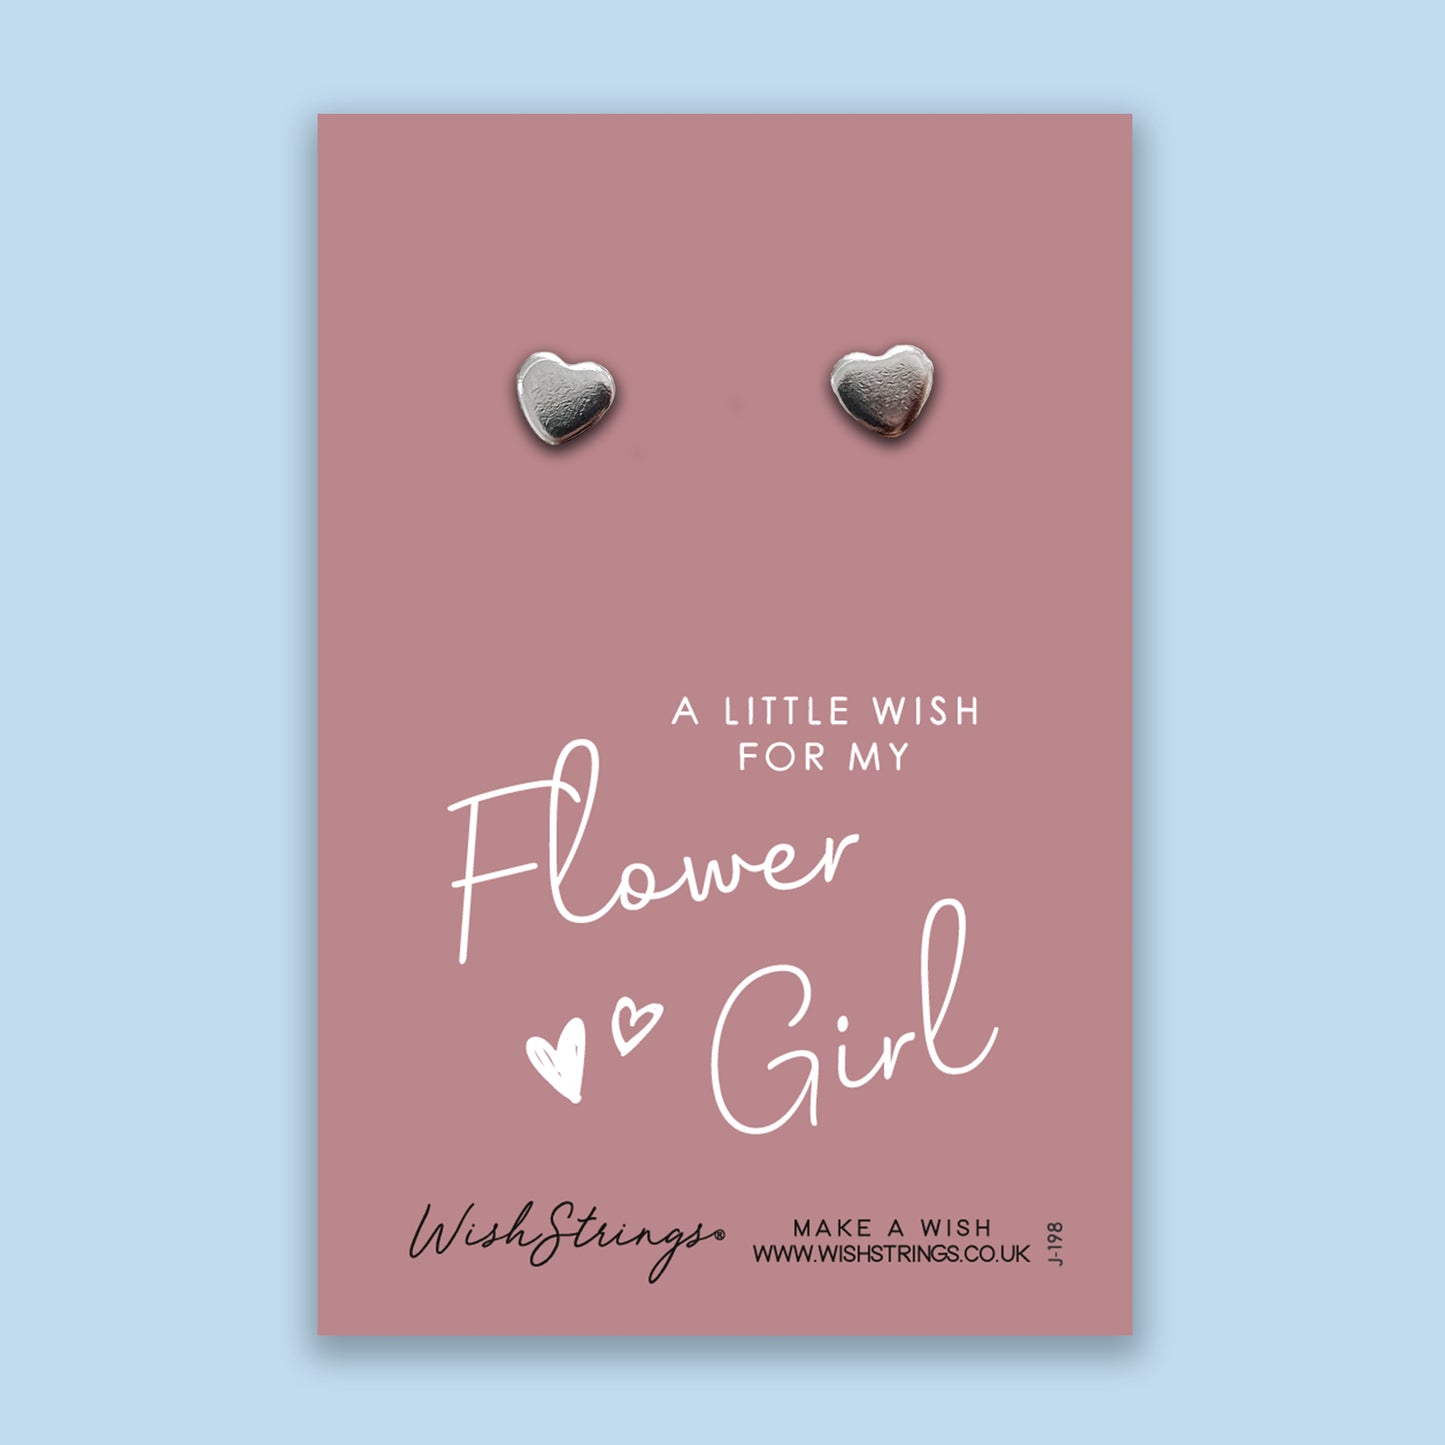 Flower Girl - Silver Heart Stud Earrings | 304 Stainless - Hypoallergenic